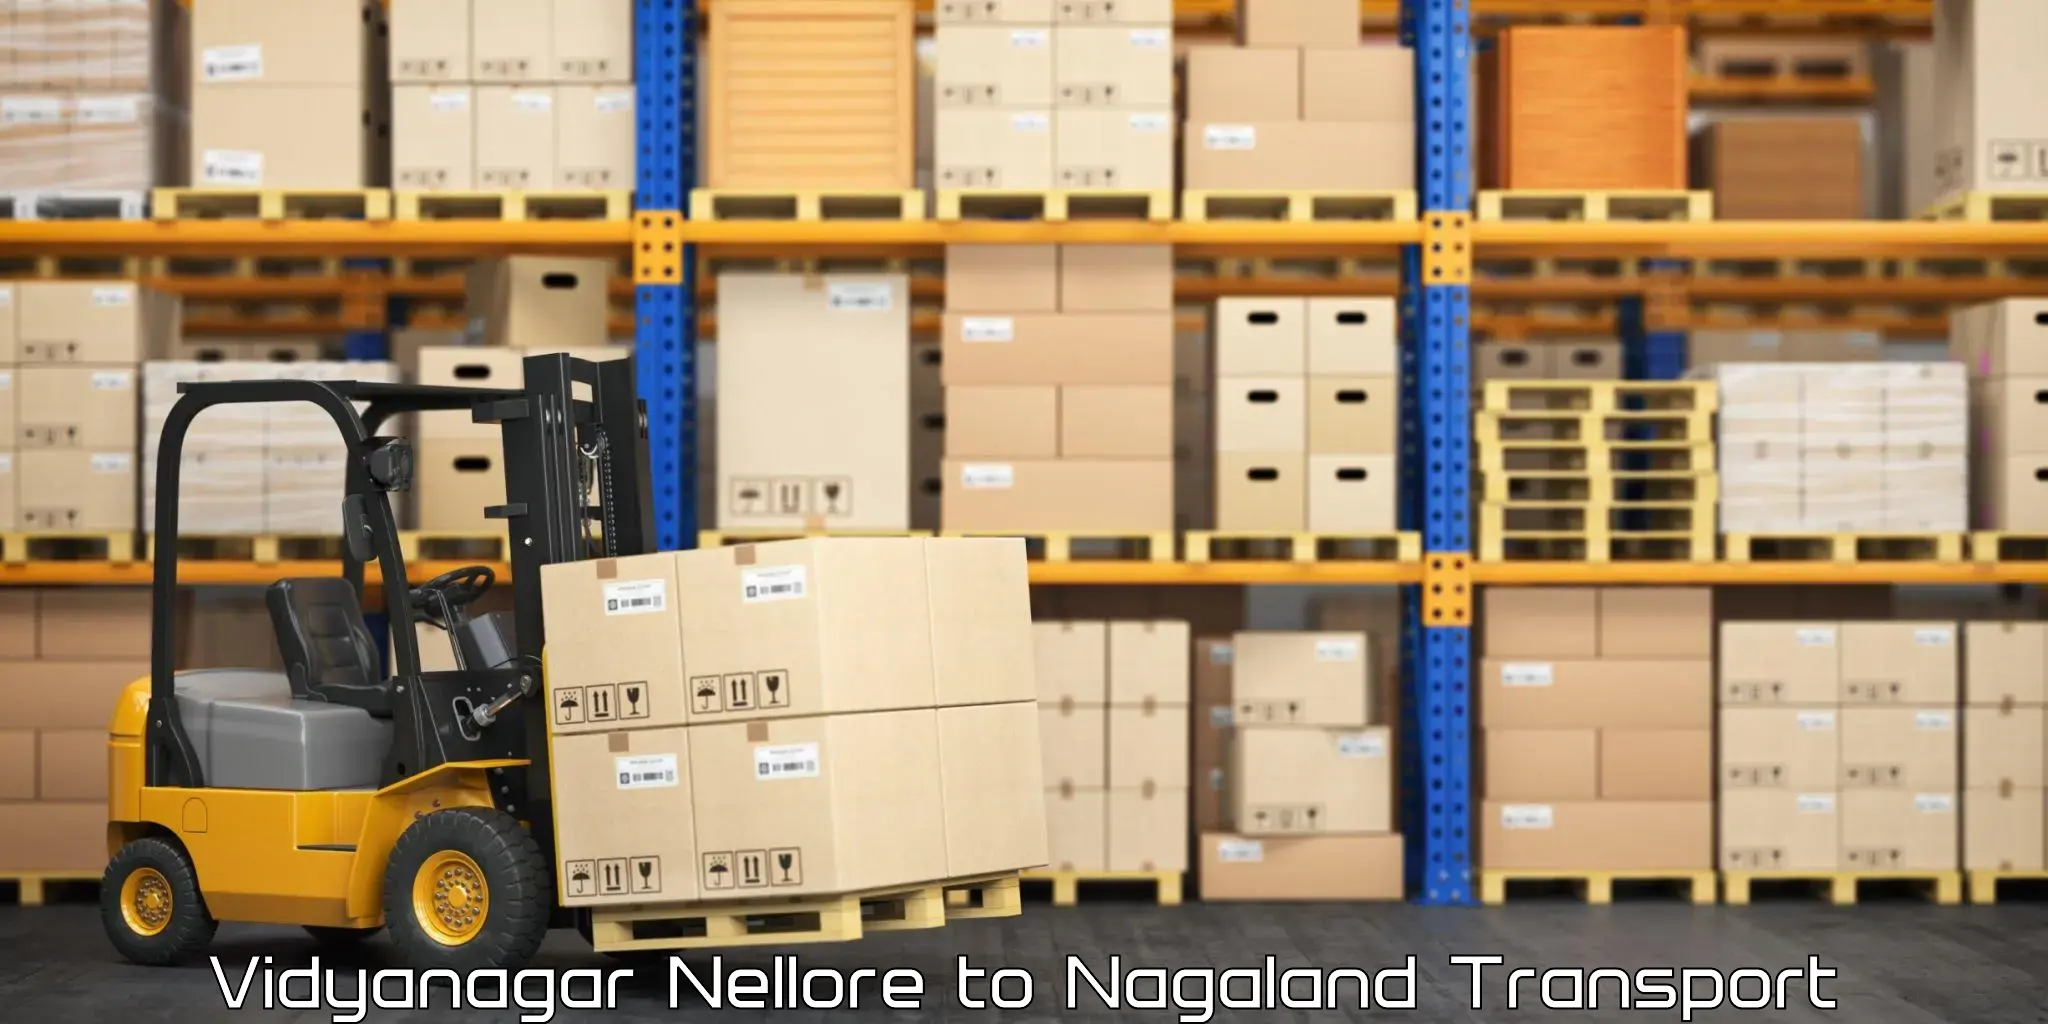 Nearest transport service Vidyanagar Nellore to Nagaland